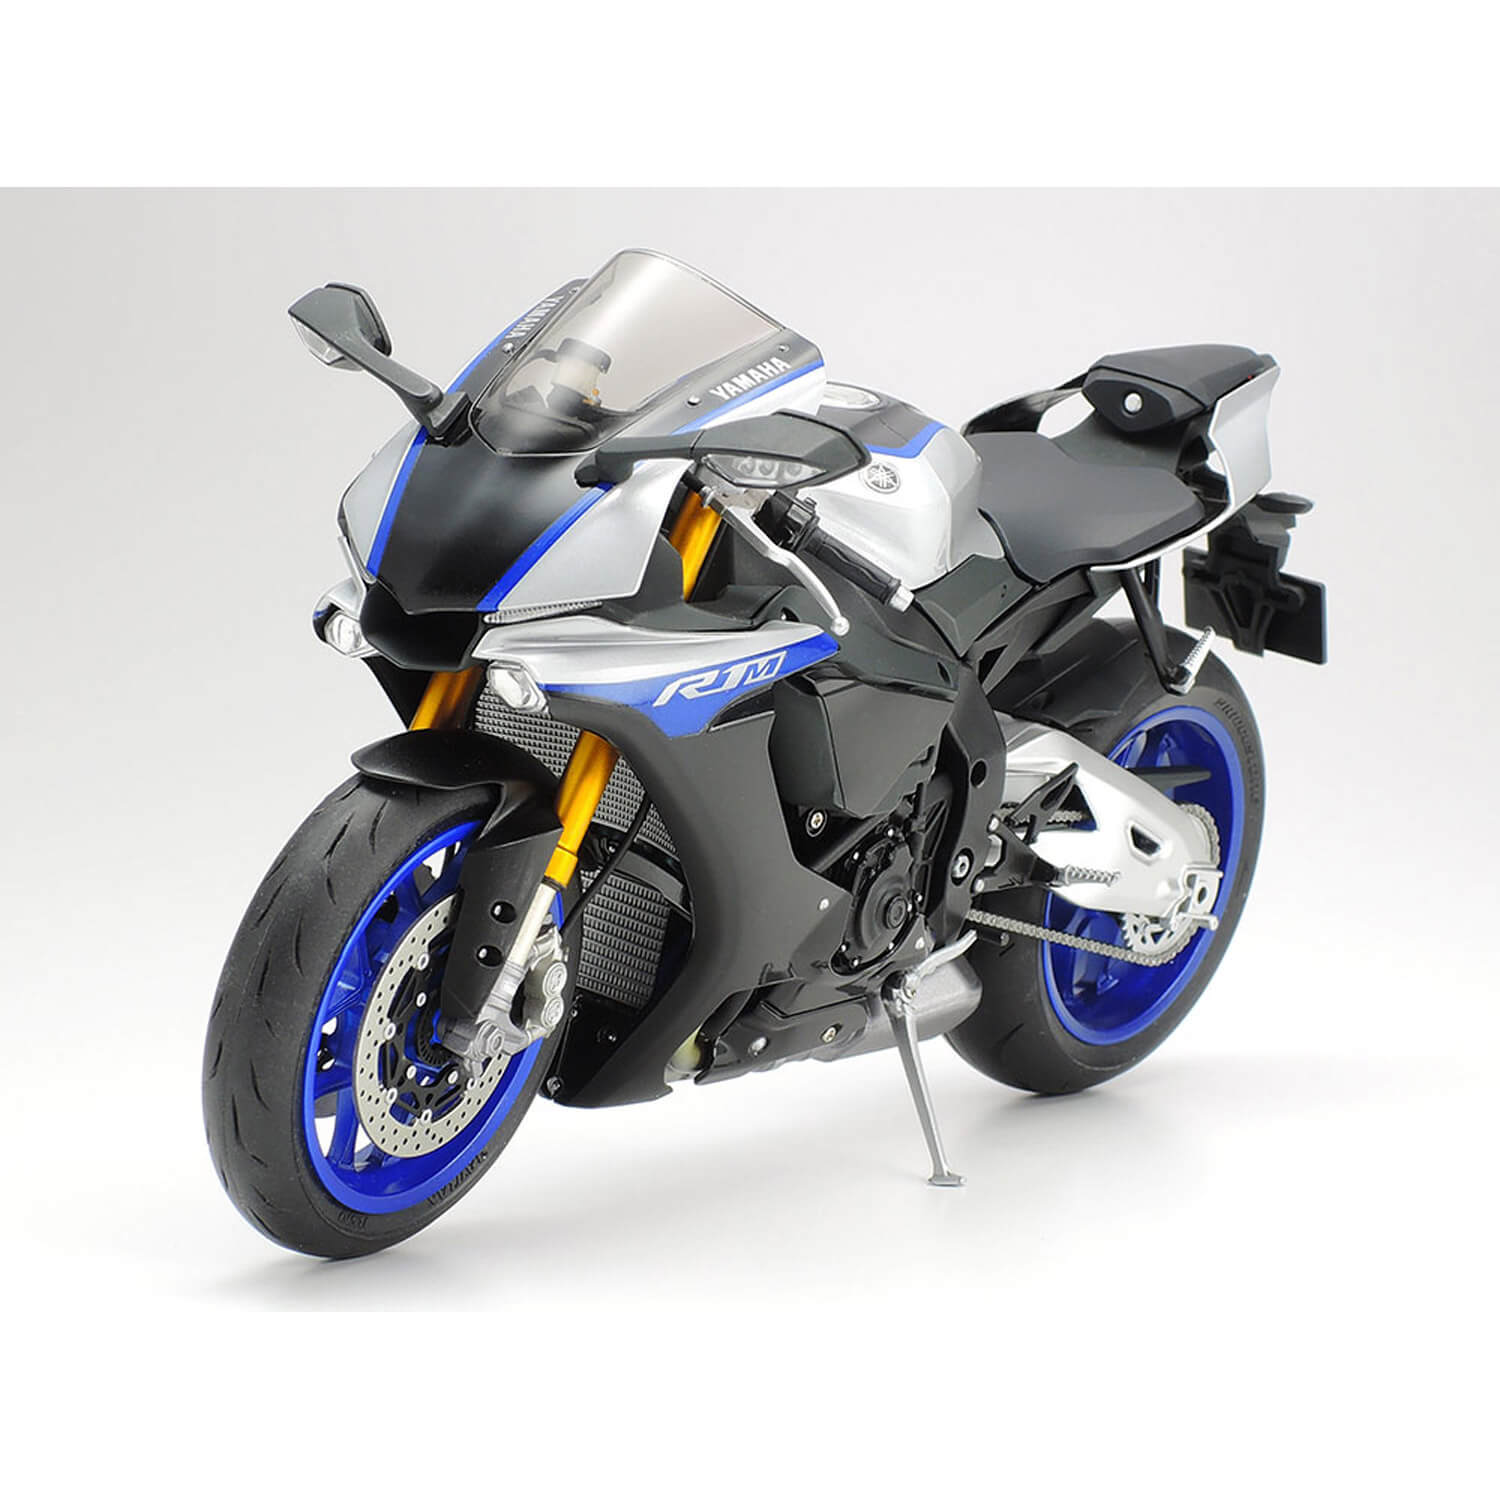 Maquette moto : Yamaha YZF-R1M - Jeux et jouets Tamiya - Avenue